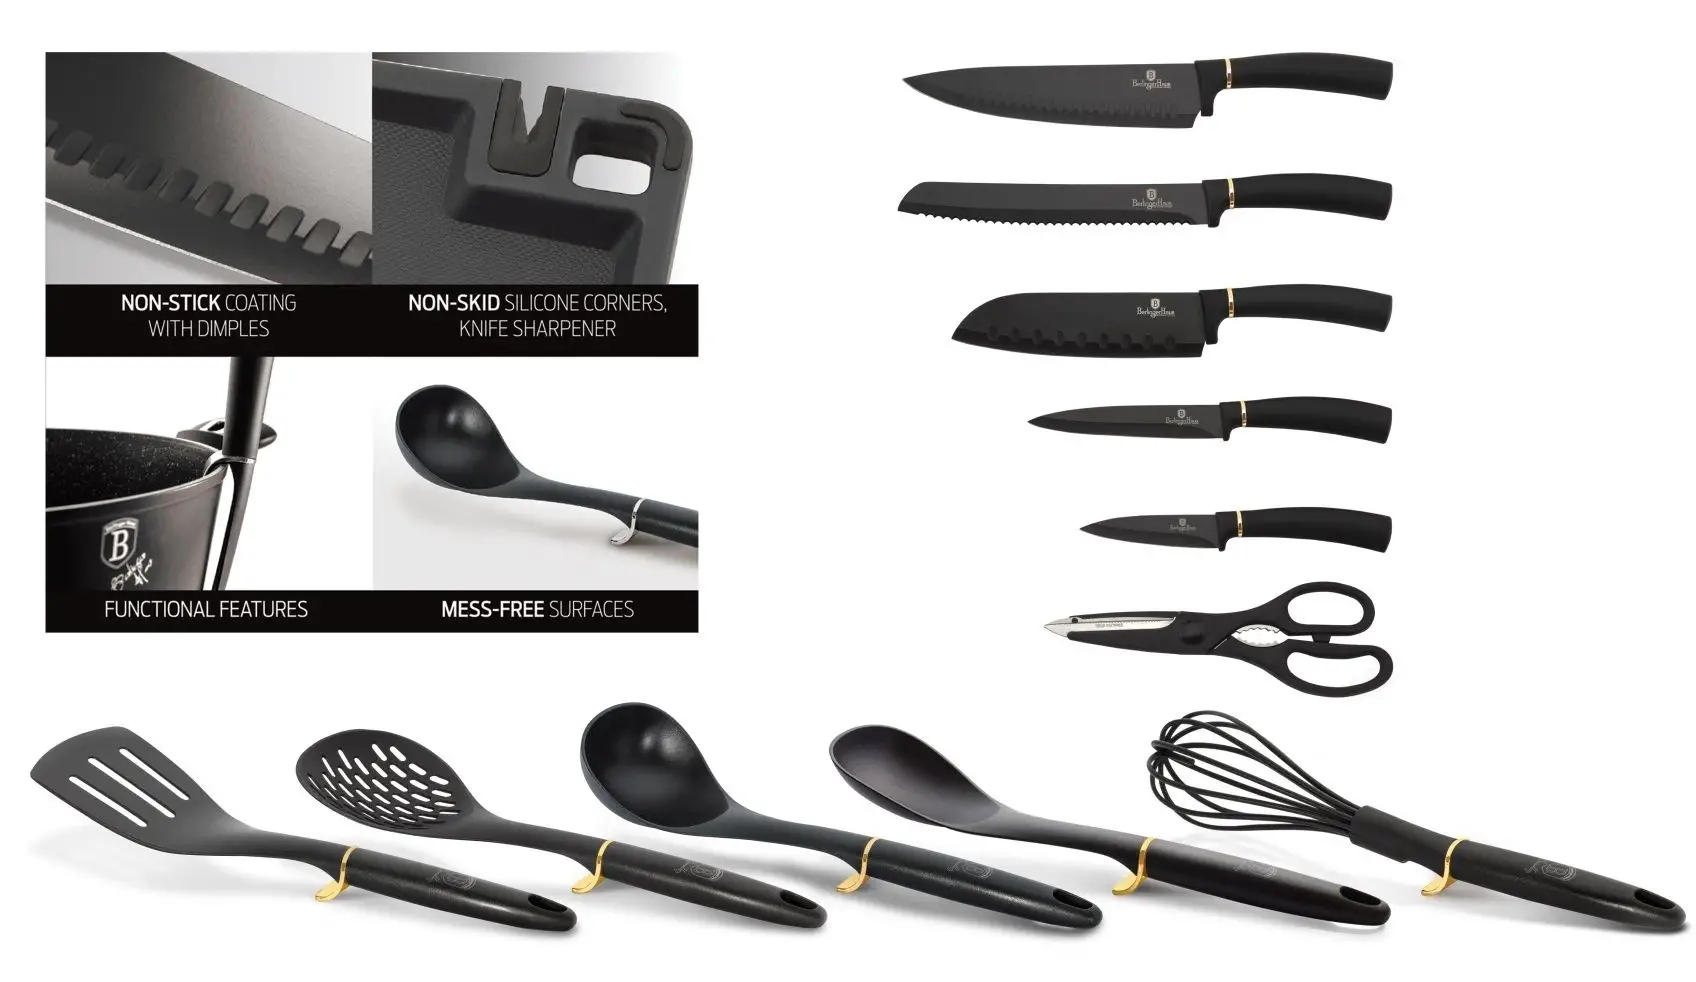 Sada Berlingerhaus Carbon Metallic Line BH-2548 obsahuje 1 kuchyňské nůžky, 5 speciálních nožů, 5 různých naběraček, 1 prkénko s brouskem a 1 praktický stojánek.